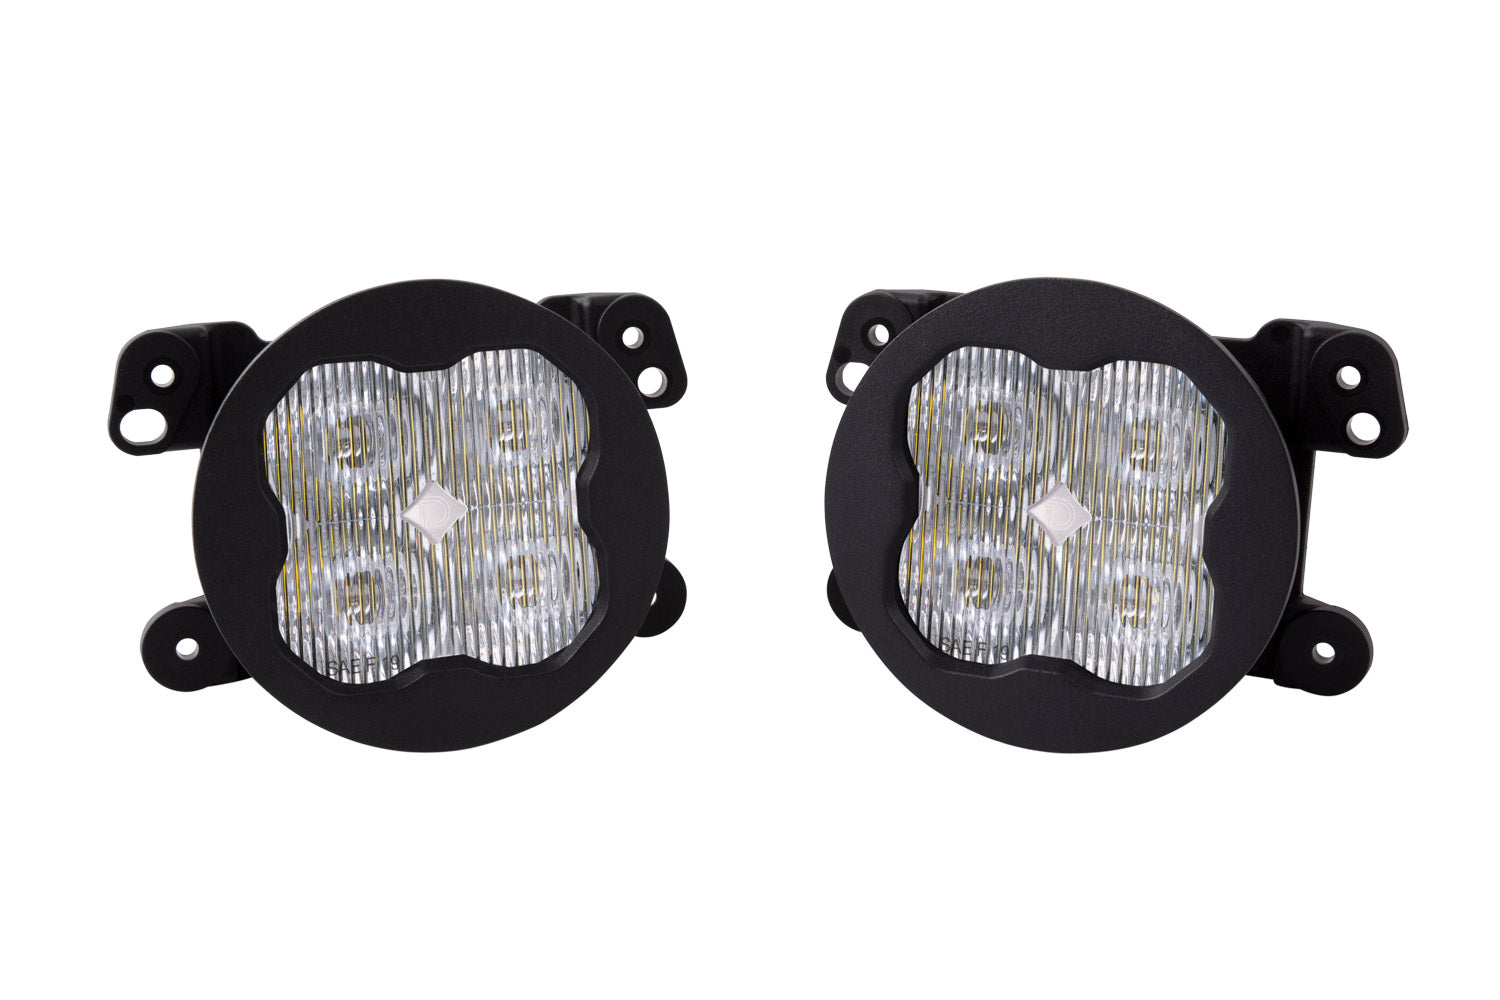 SS3 LED Fog Light Kit for 2020-2021 Jeep Gladiator, White SAE Fog Pro